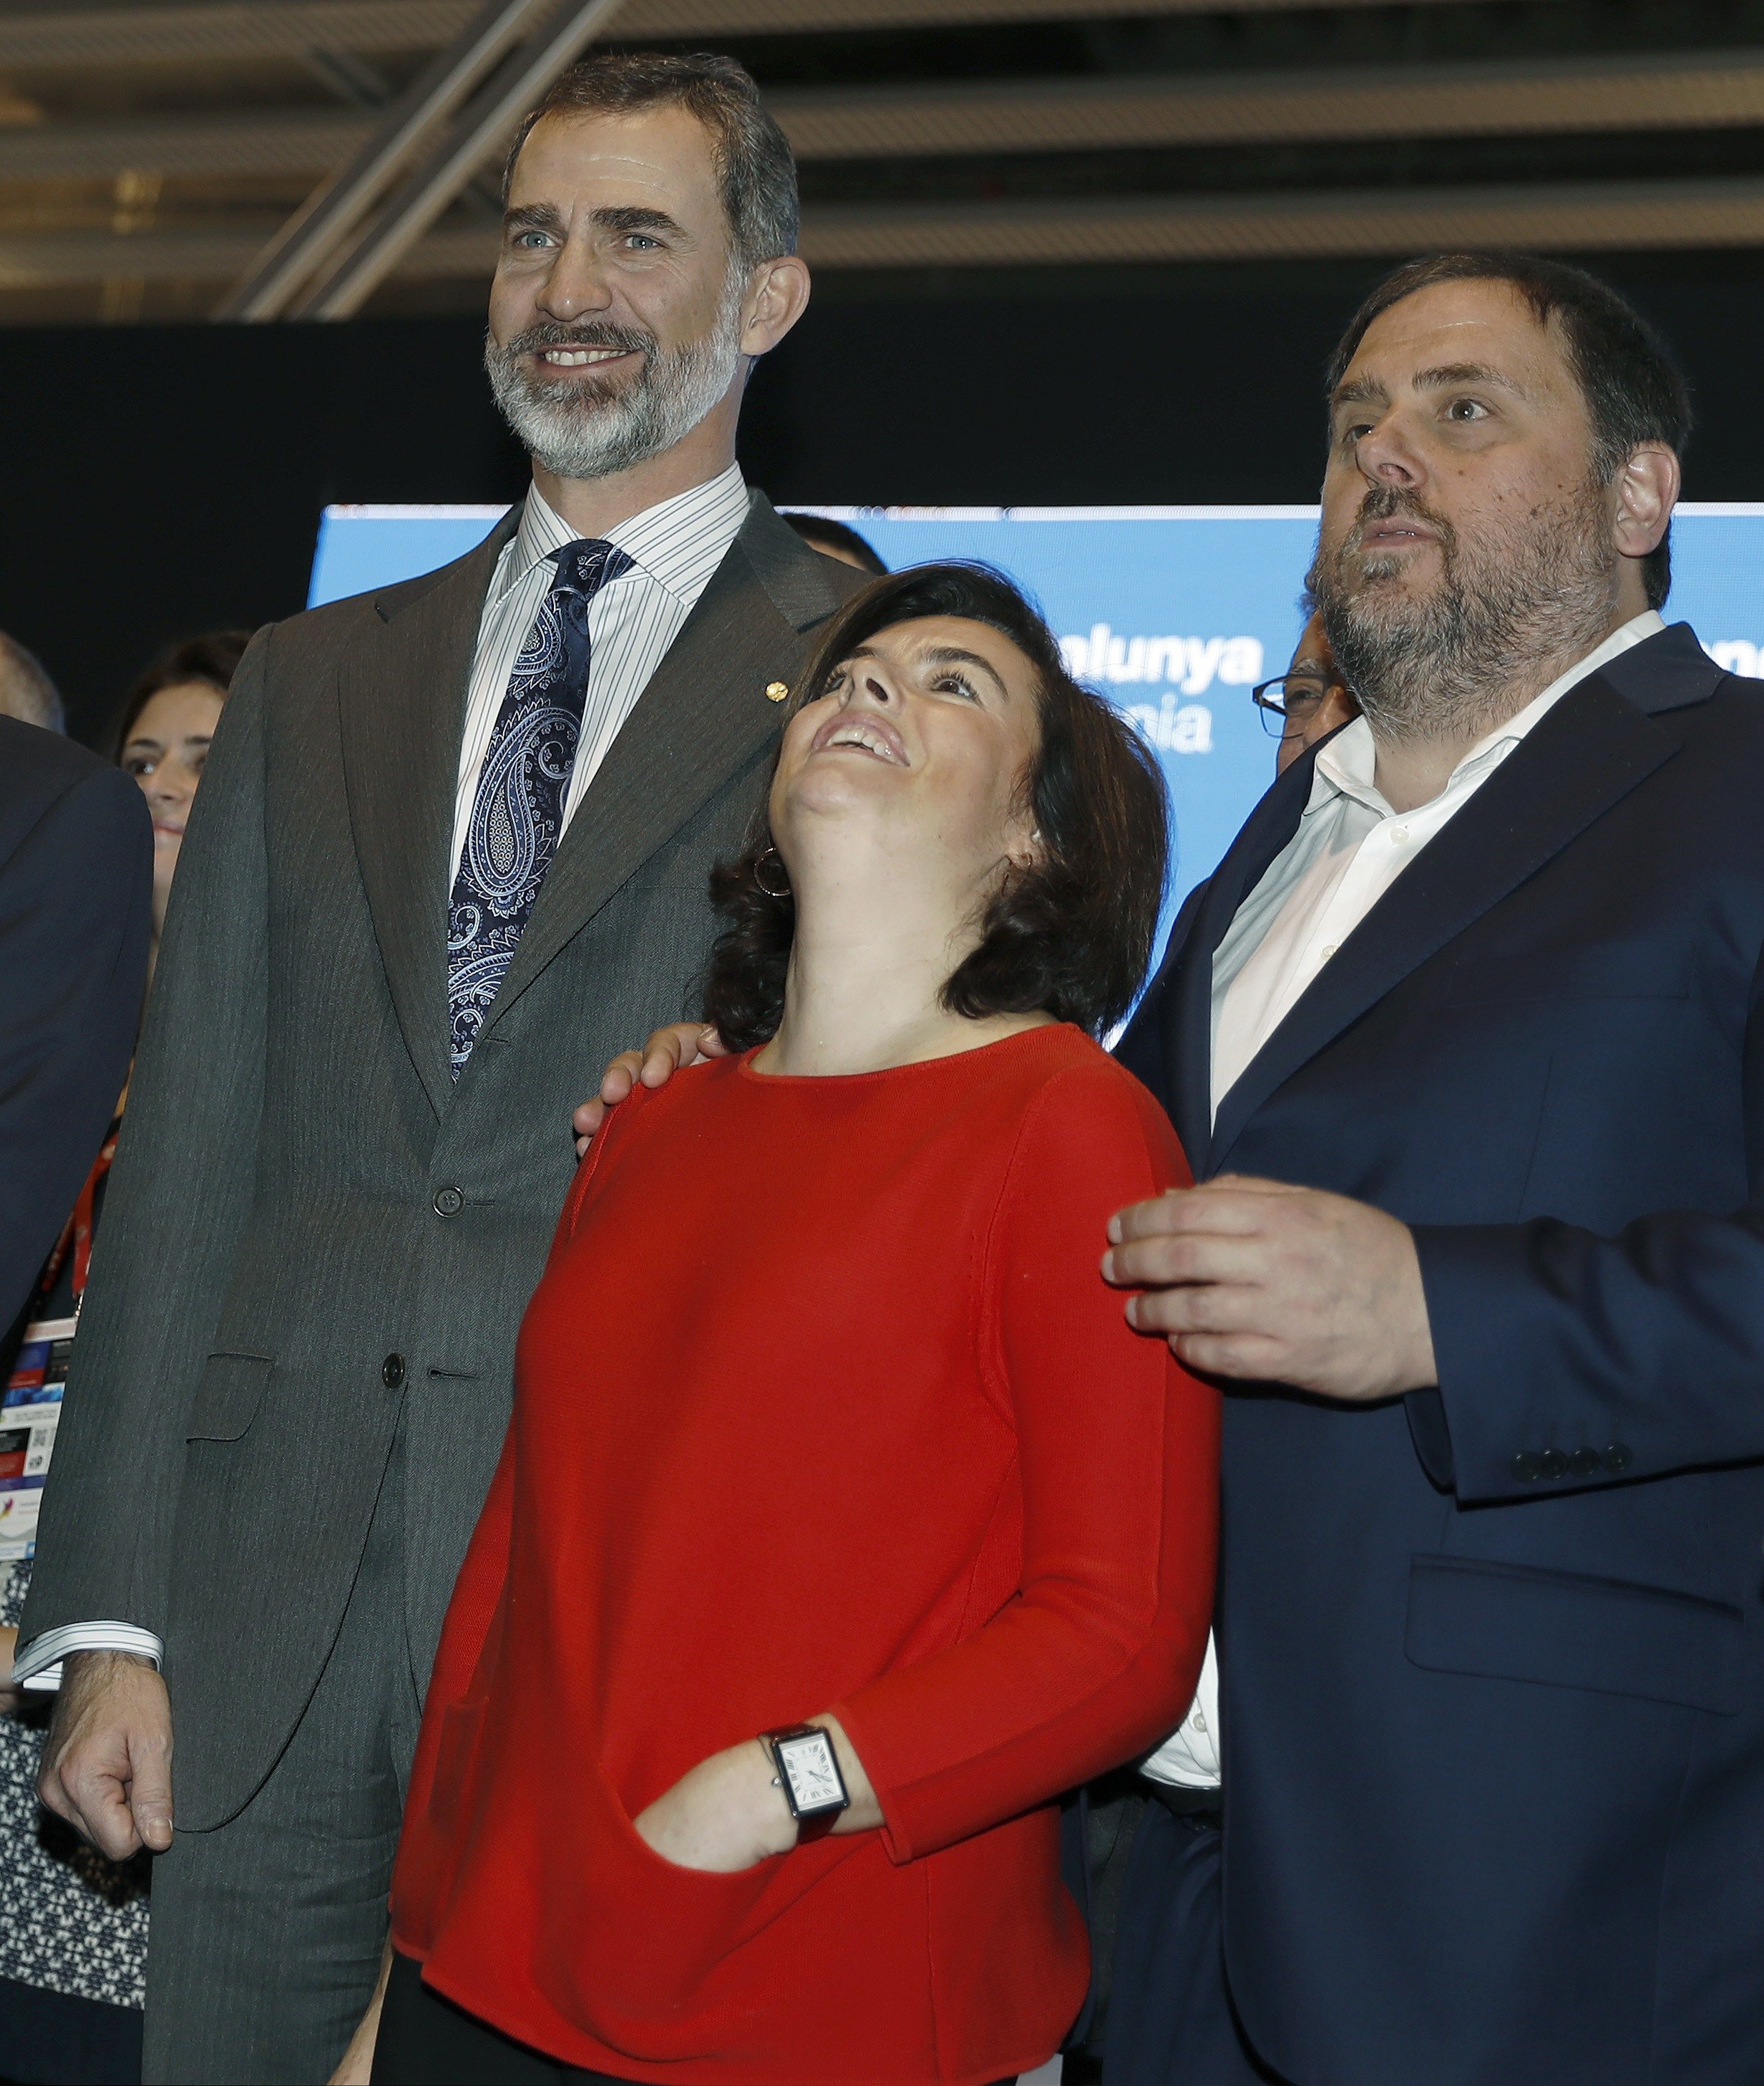 Demanen la dimissió de Sáenz de Santamaría per aquesta foto amb Junqueras